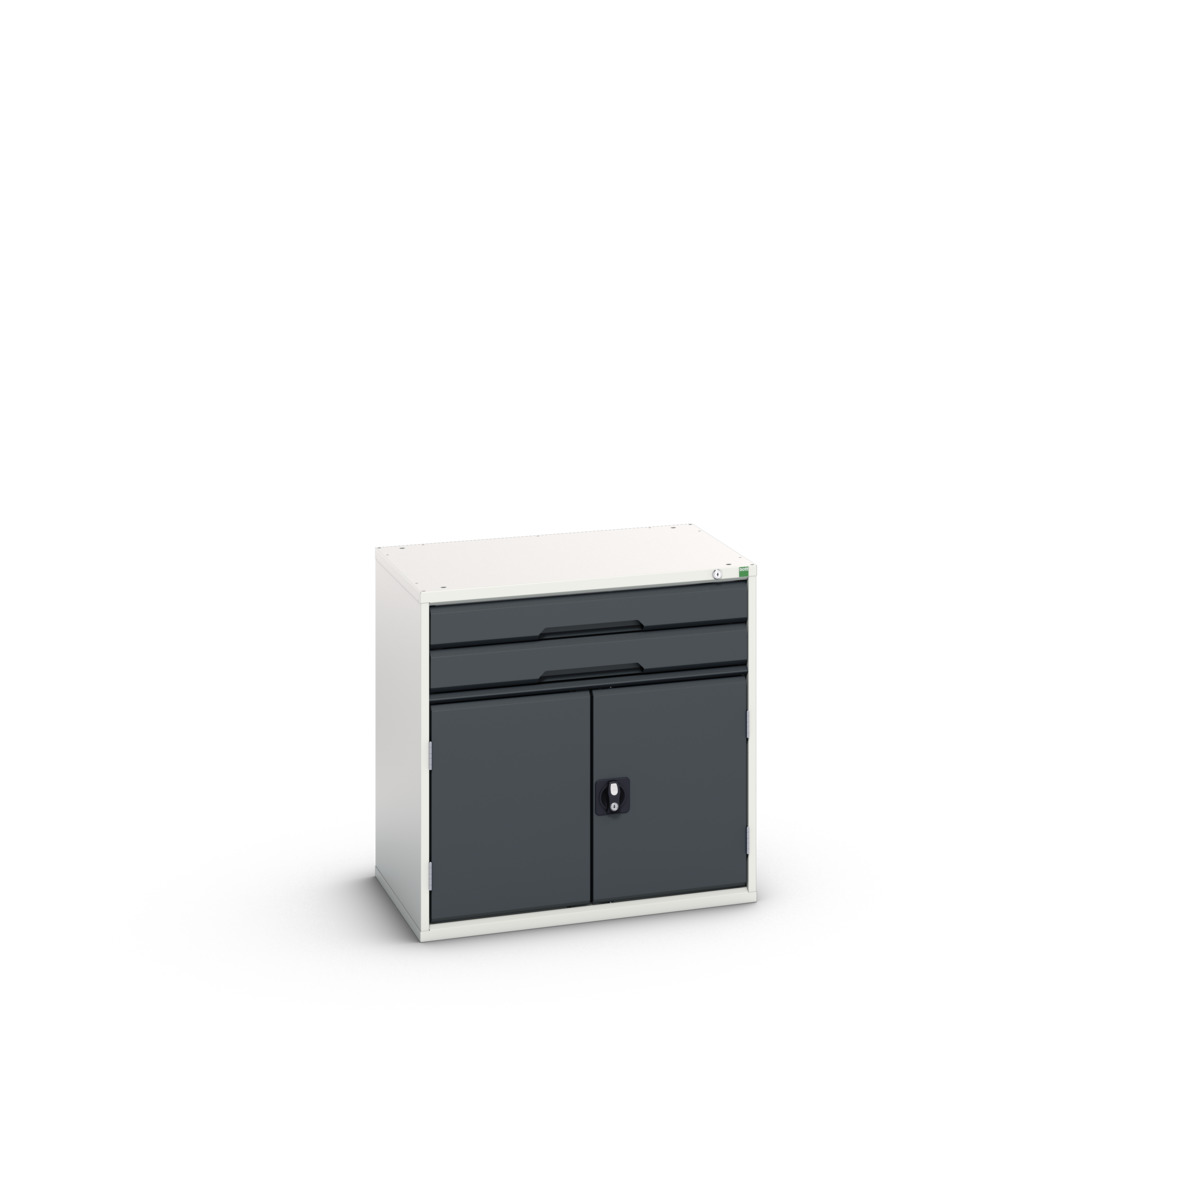 16925116. - verso drawer-door cabinet